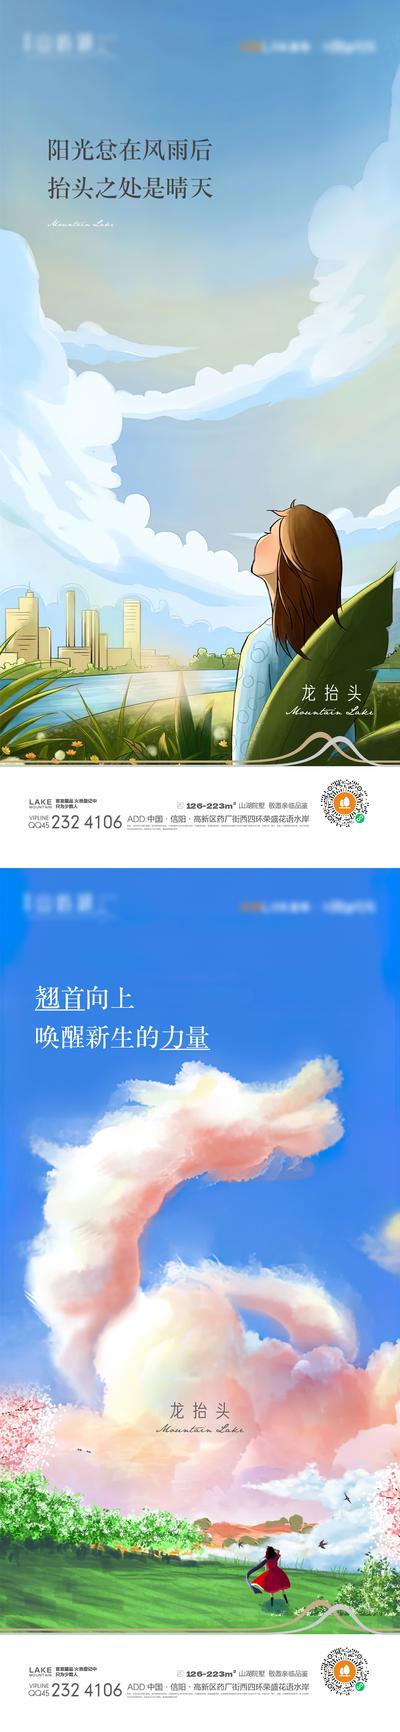 南门网 海报 中国传统节日 龙抬头 二月二 春天 天空 插画 系列